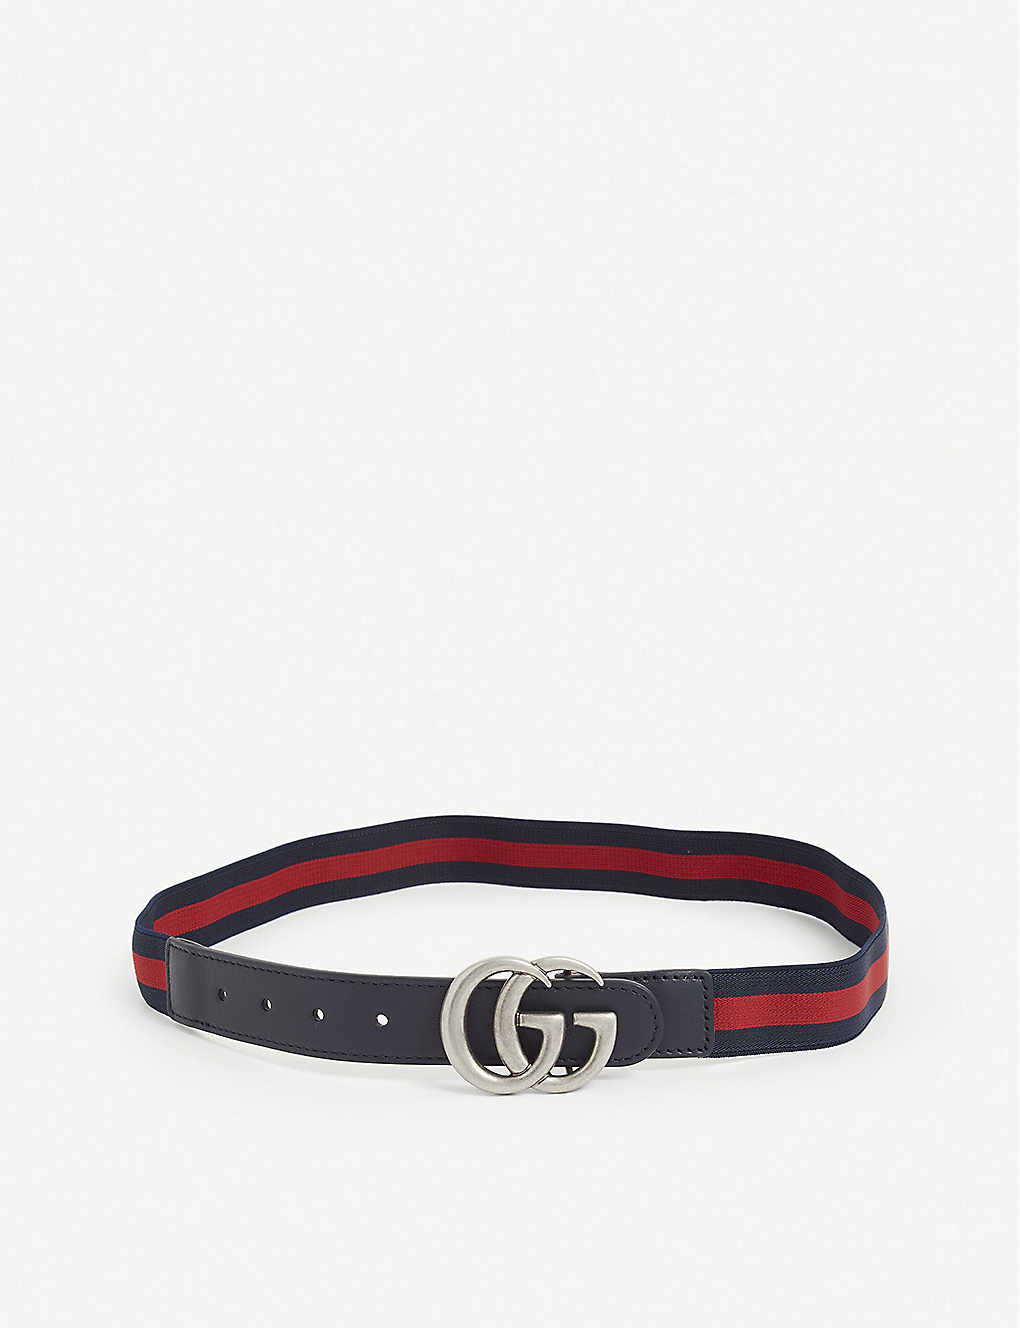 GG Web stripe elastic belt 2-8 years Selfridges & Co Girls Accessories Belts 